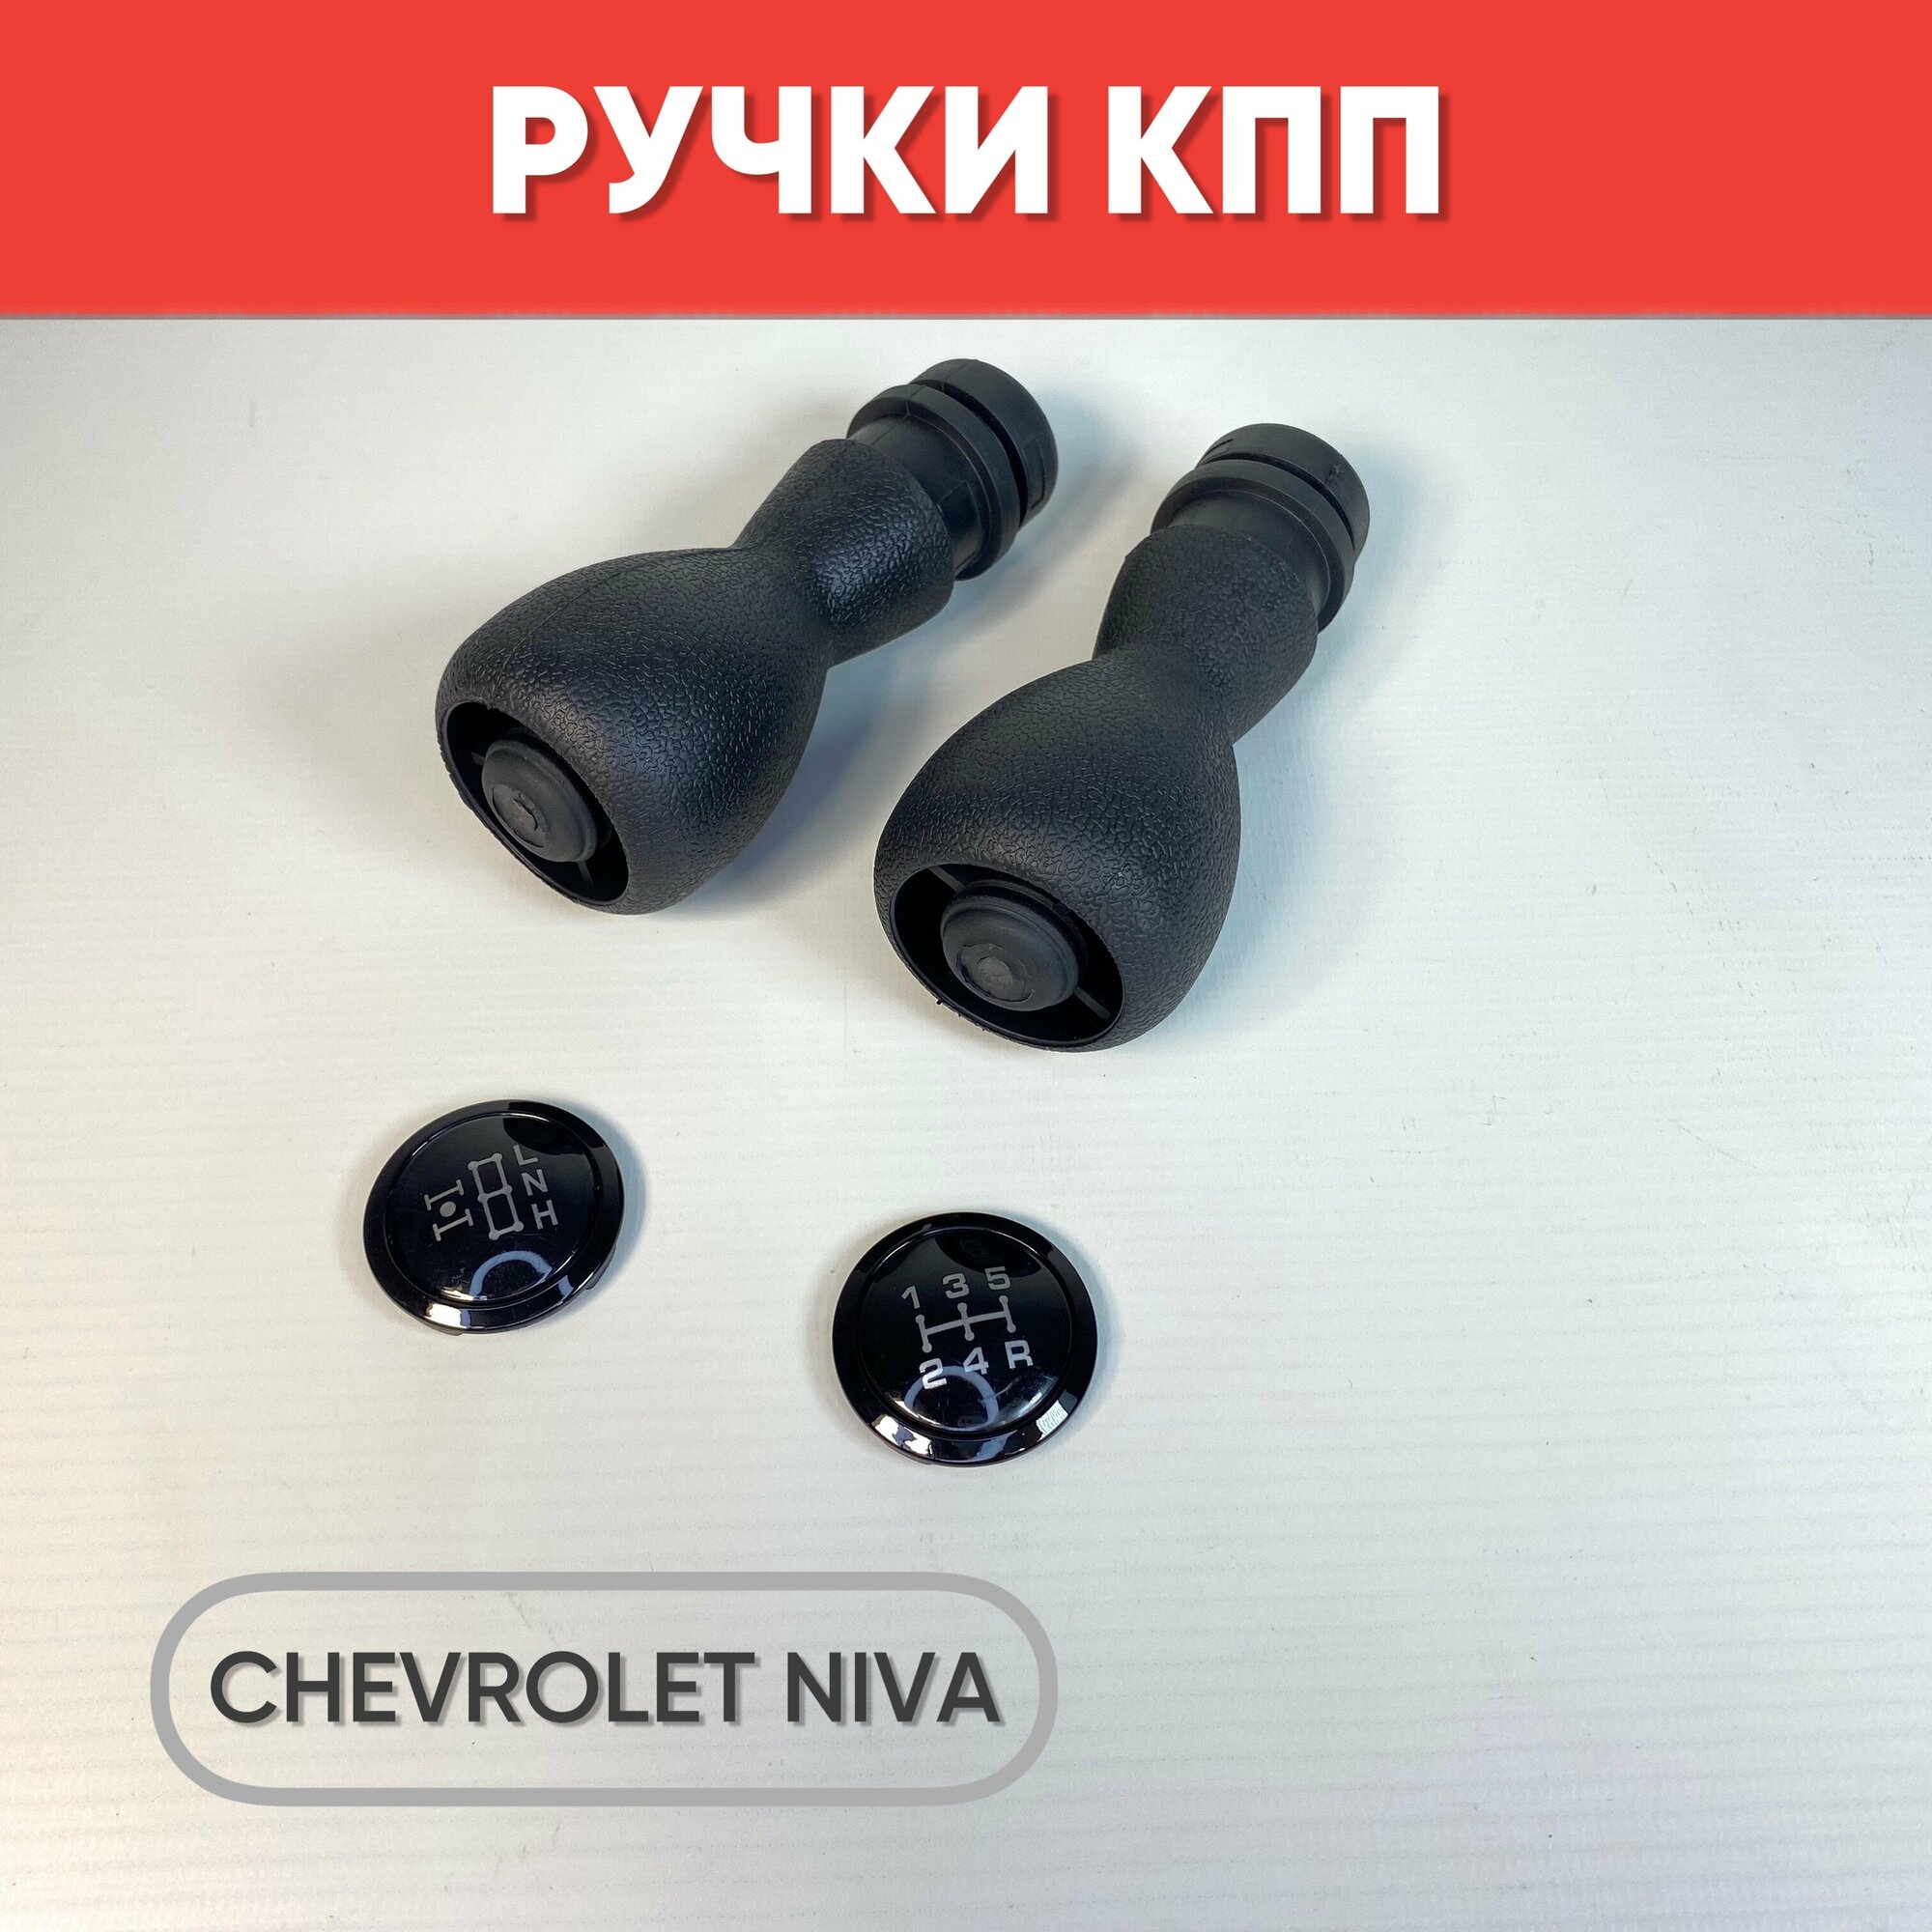 Ручка КПП и раздатки для Chevrolet Niva черный /хром / Рычаги МКПП для Шевроле Нива